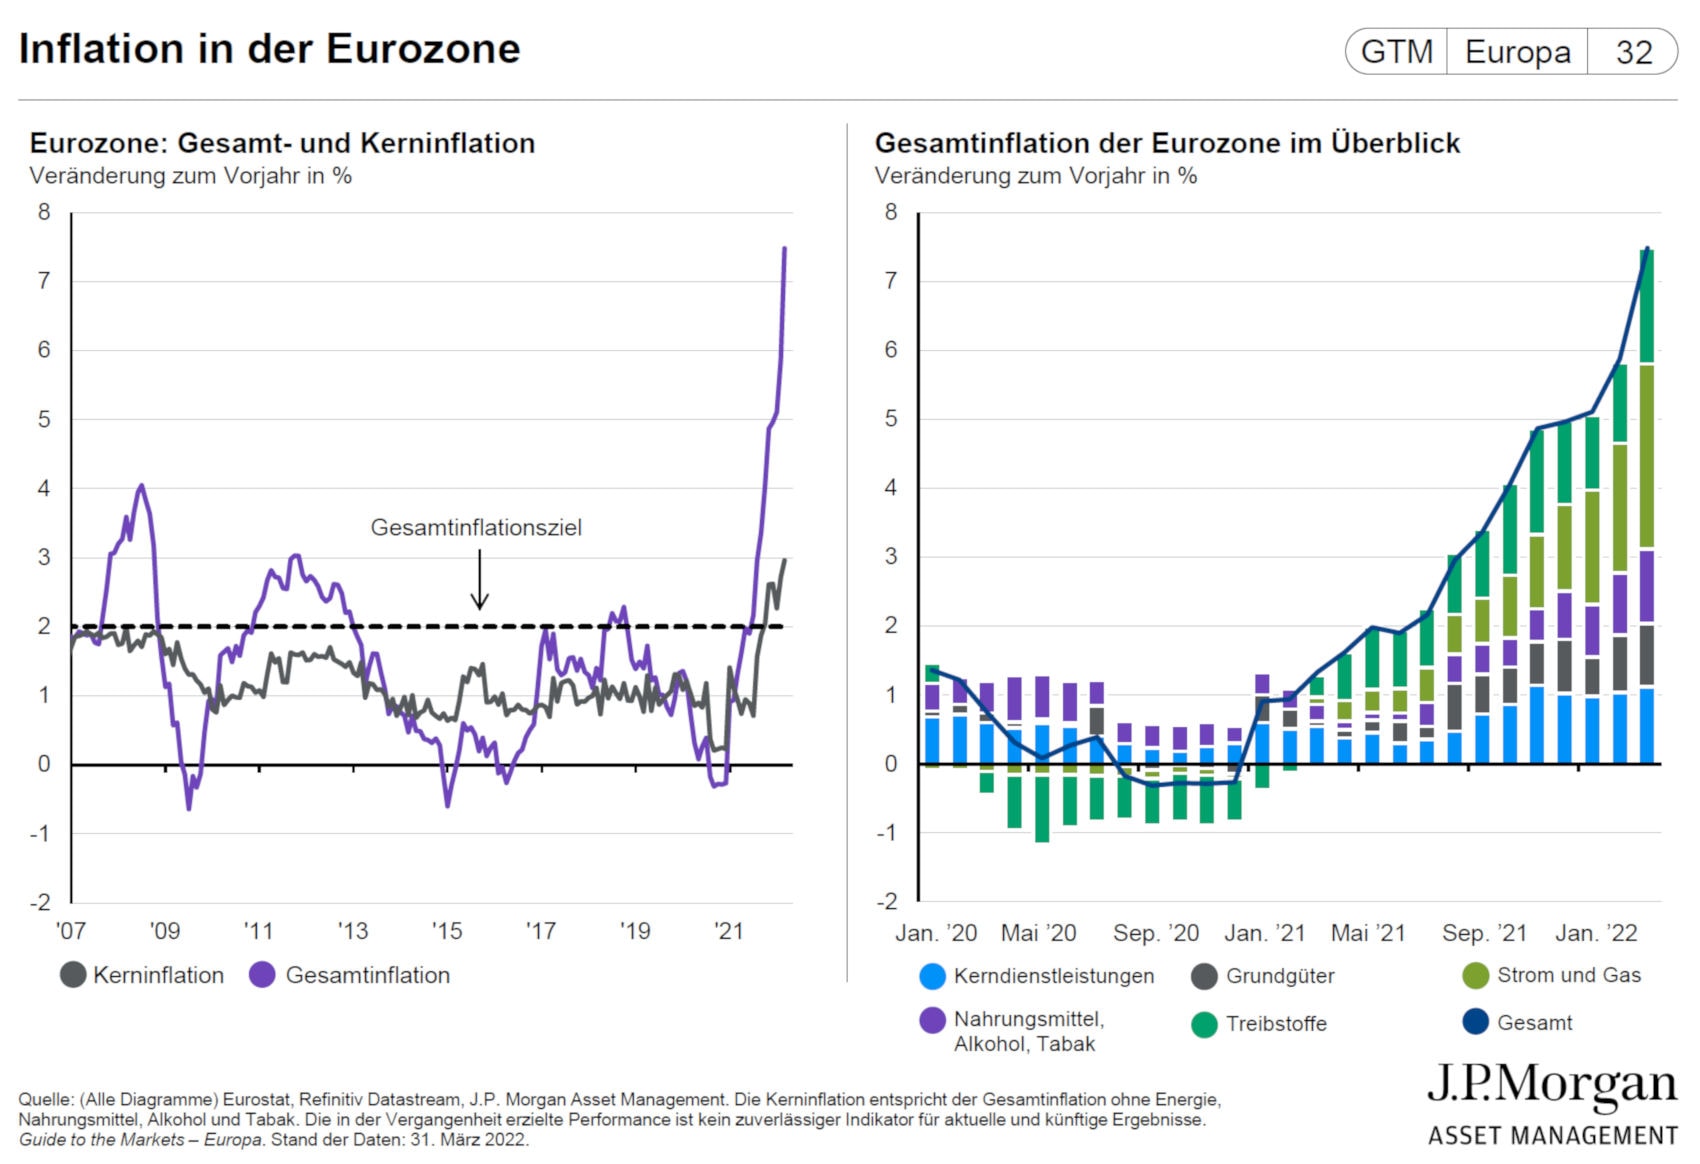 Historische Kern- und Gesamtinflation in der Eurozone